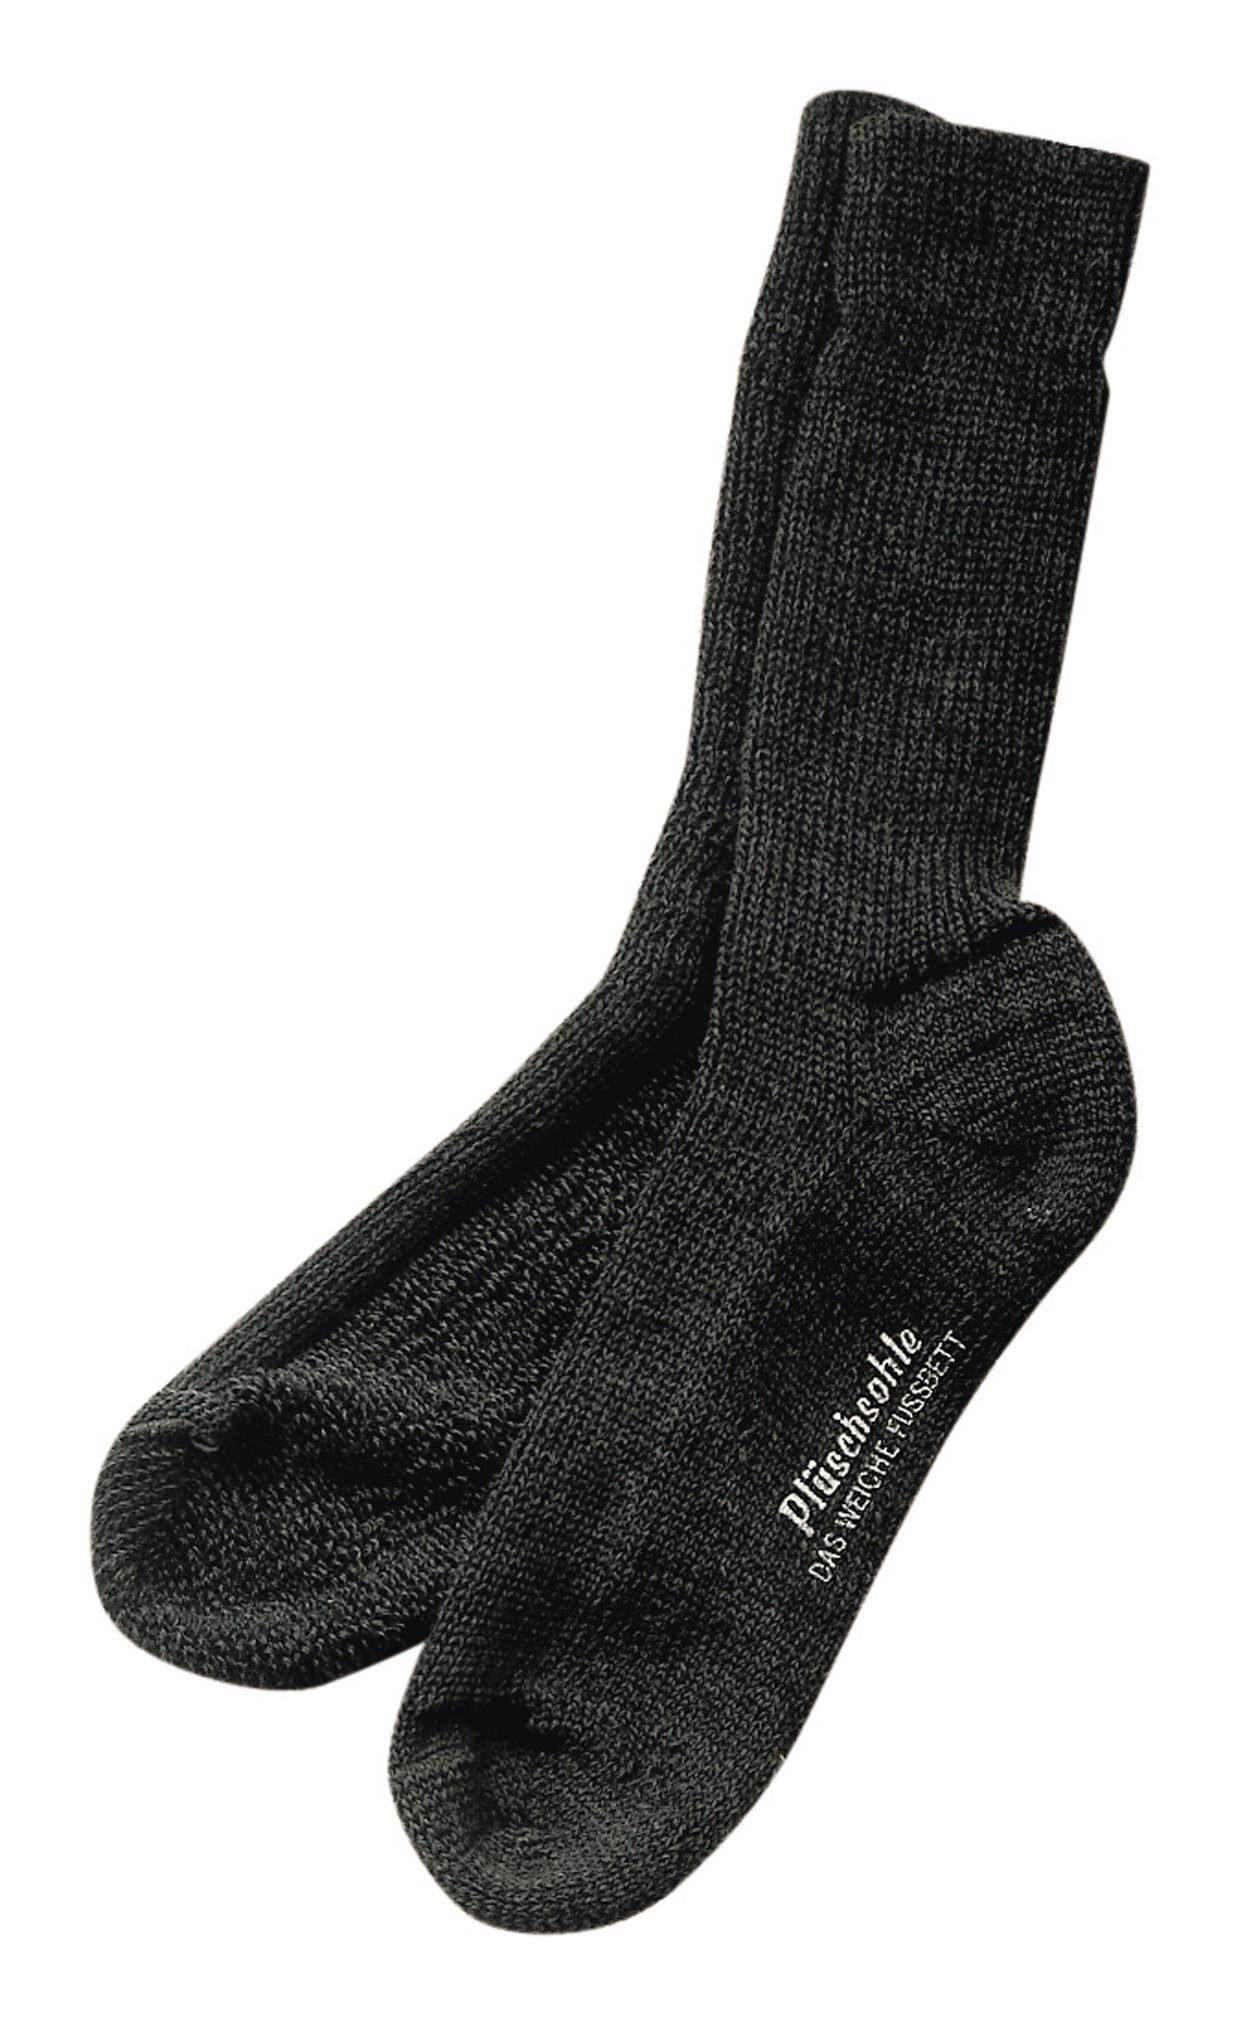 fortis Socken Gesundheitssocke Größe 47 - 48 anthrazit